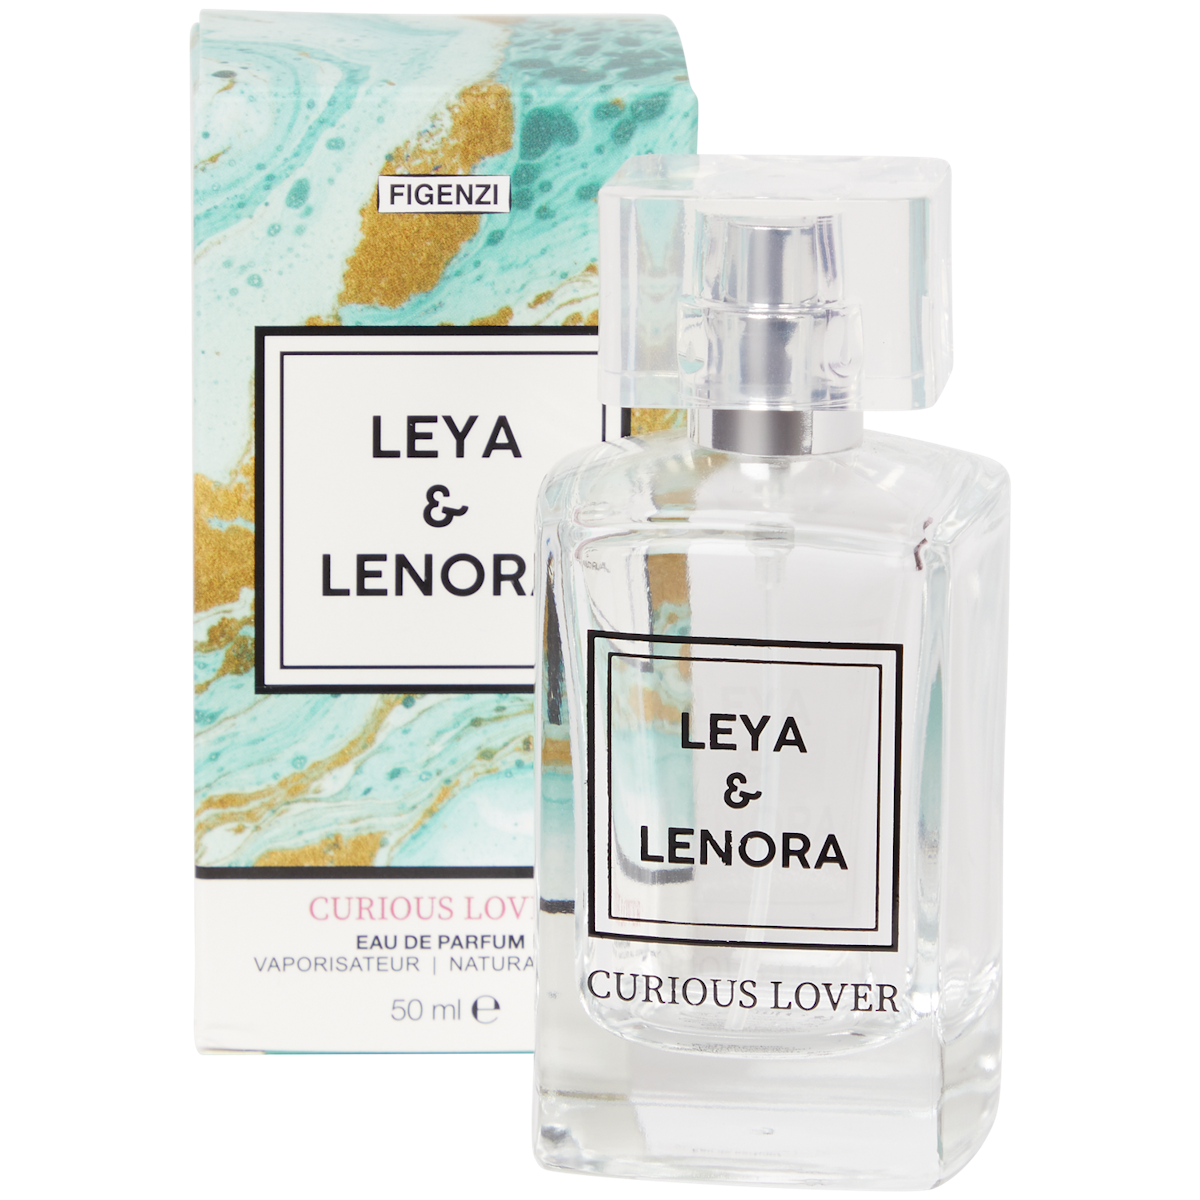 Figenzi Leya & Lenora eau de parfum